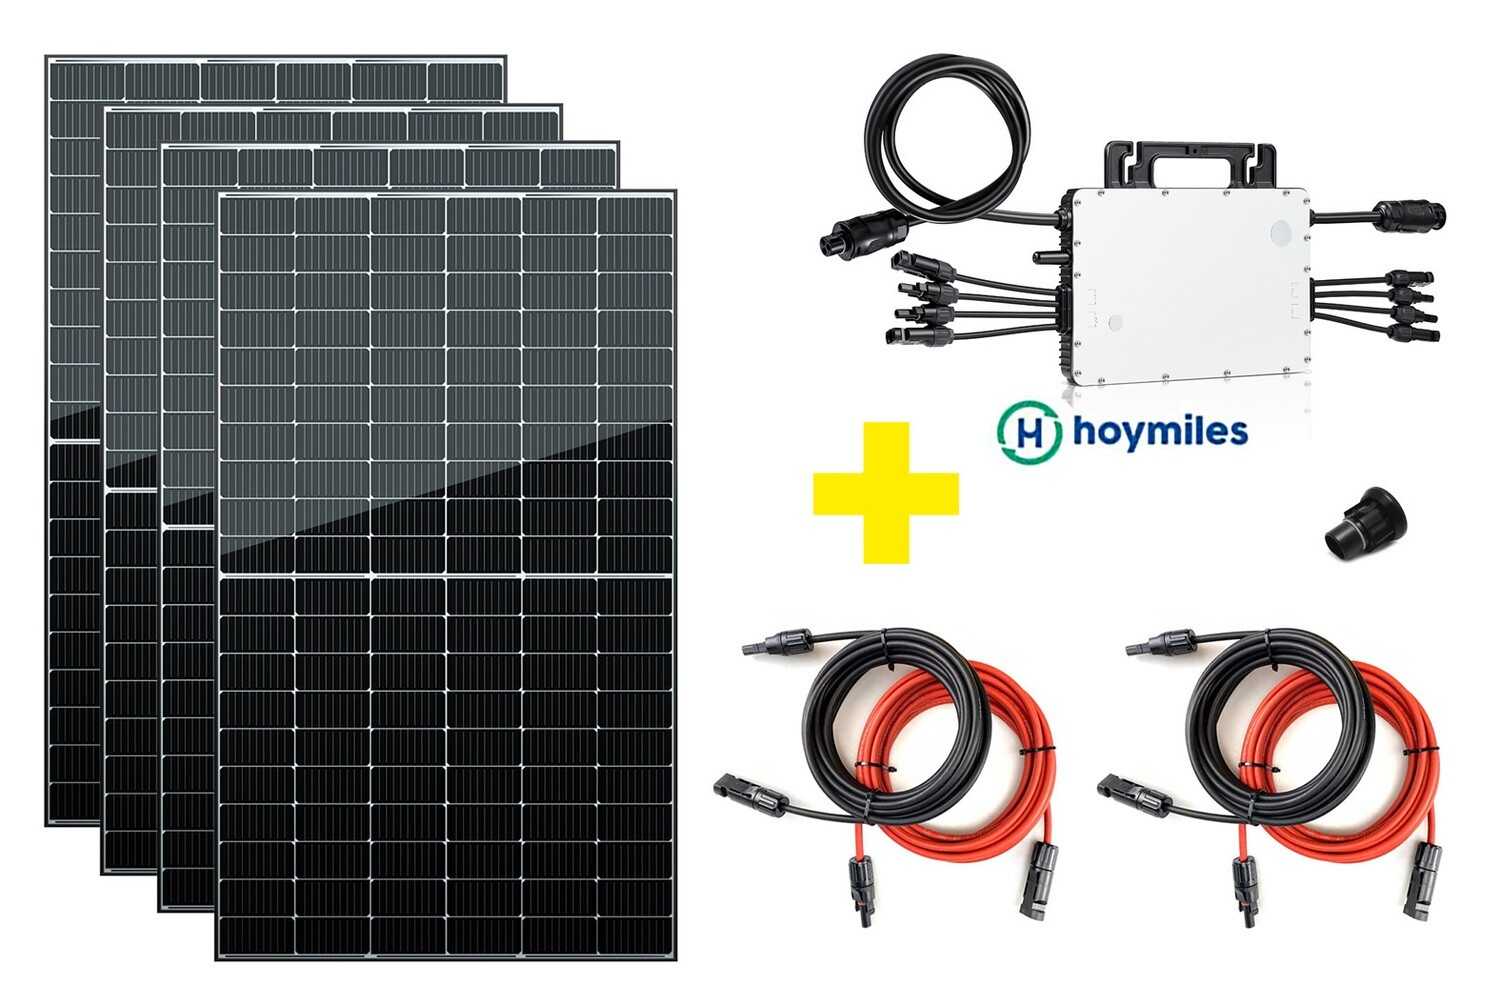 Mini PV Anlage 1500 Watt - mit 4 Solarmodulen 1520 Wp - nach Vereinbarung abholbar - oder Lieferung innerhalb von 18 Tagen